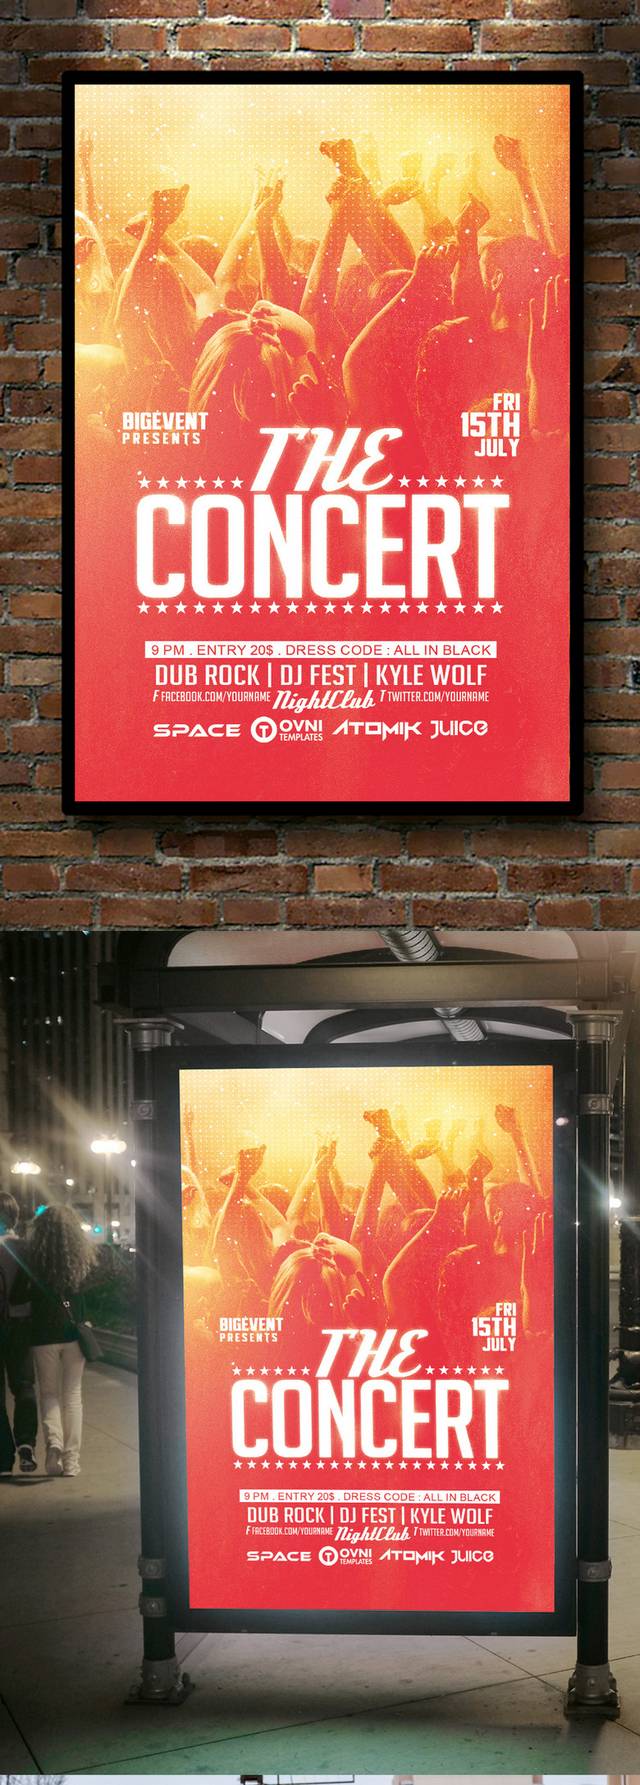 酒吧演唱会音乐宣传海报